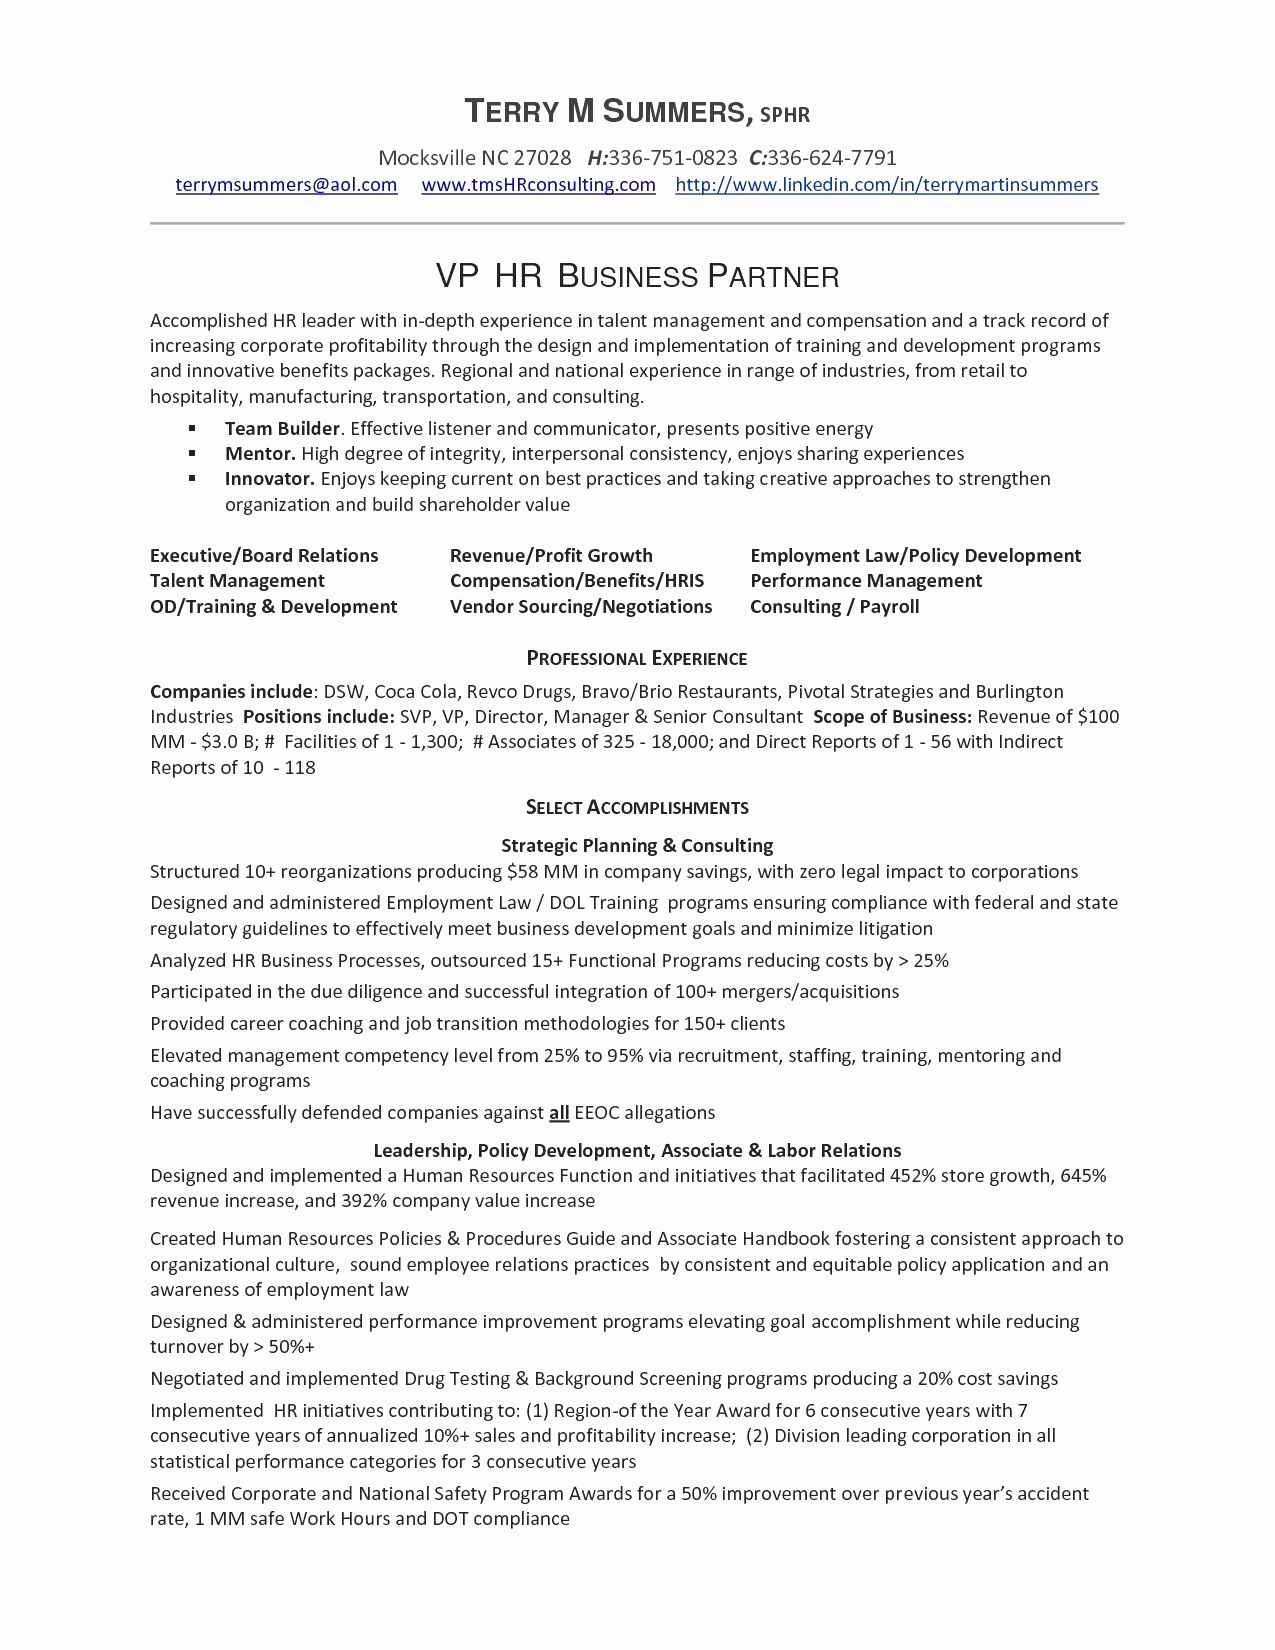 Sample Resume for Hr Business Partner 67 Inspiring Stock Of Resume format for Construction Site …